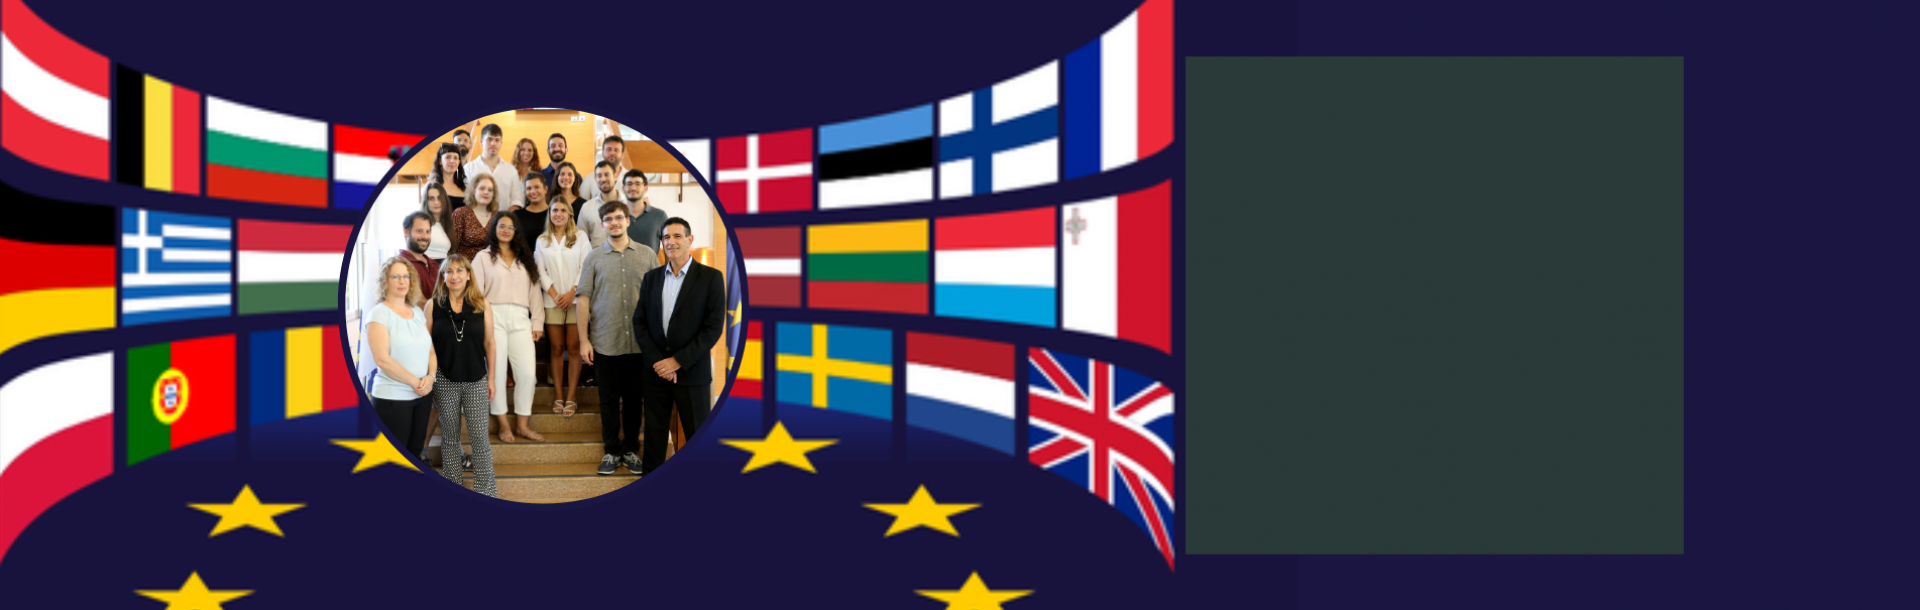 בואו למפגש היכרות עם התוכנית ללימודי האיחוד האירופי